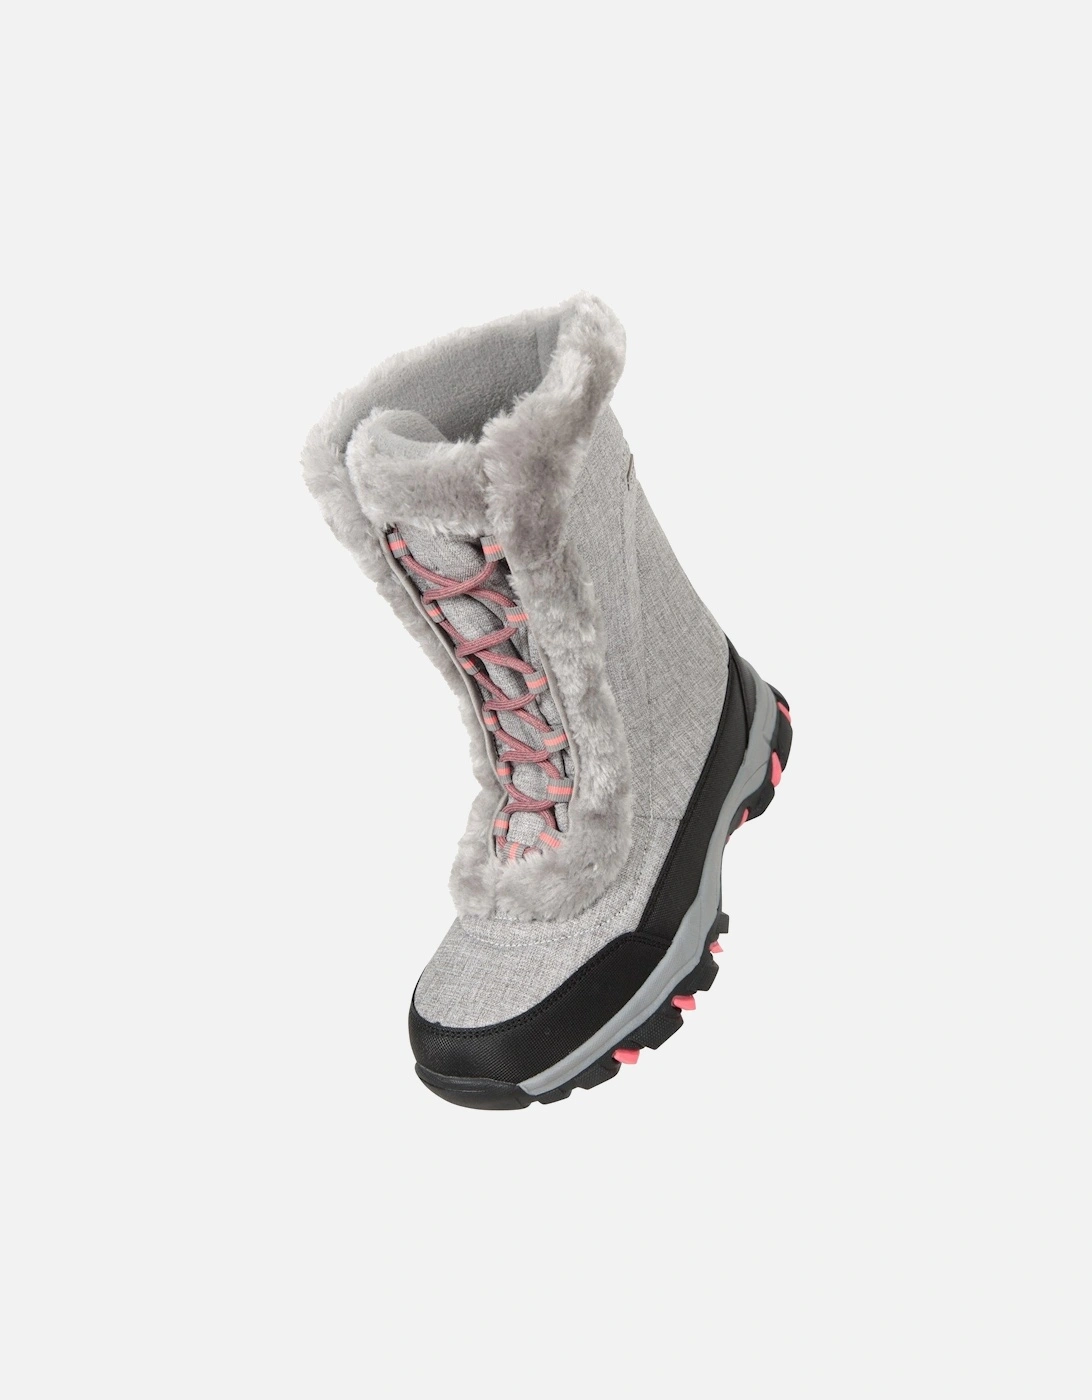 Womens/Ladies Ohio Snow Boots, 6 of 5